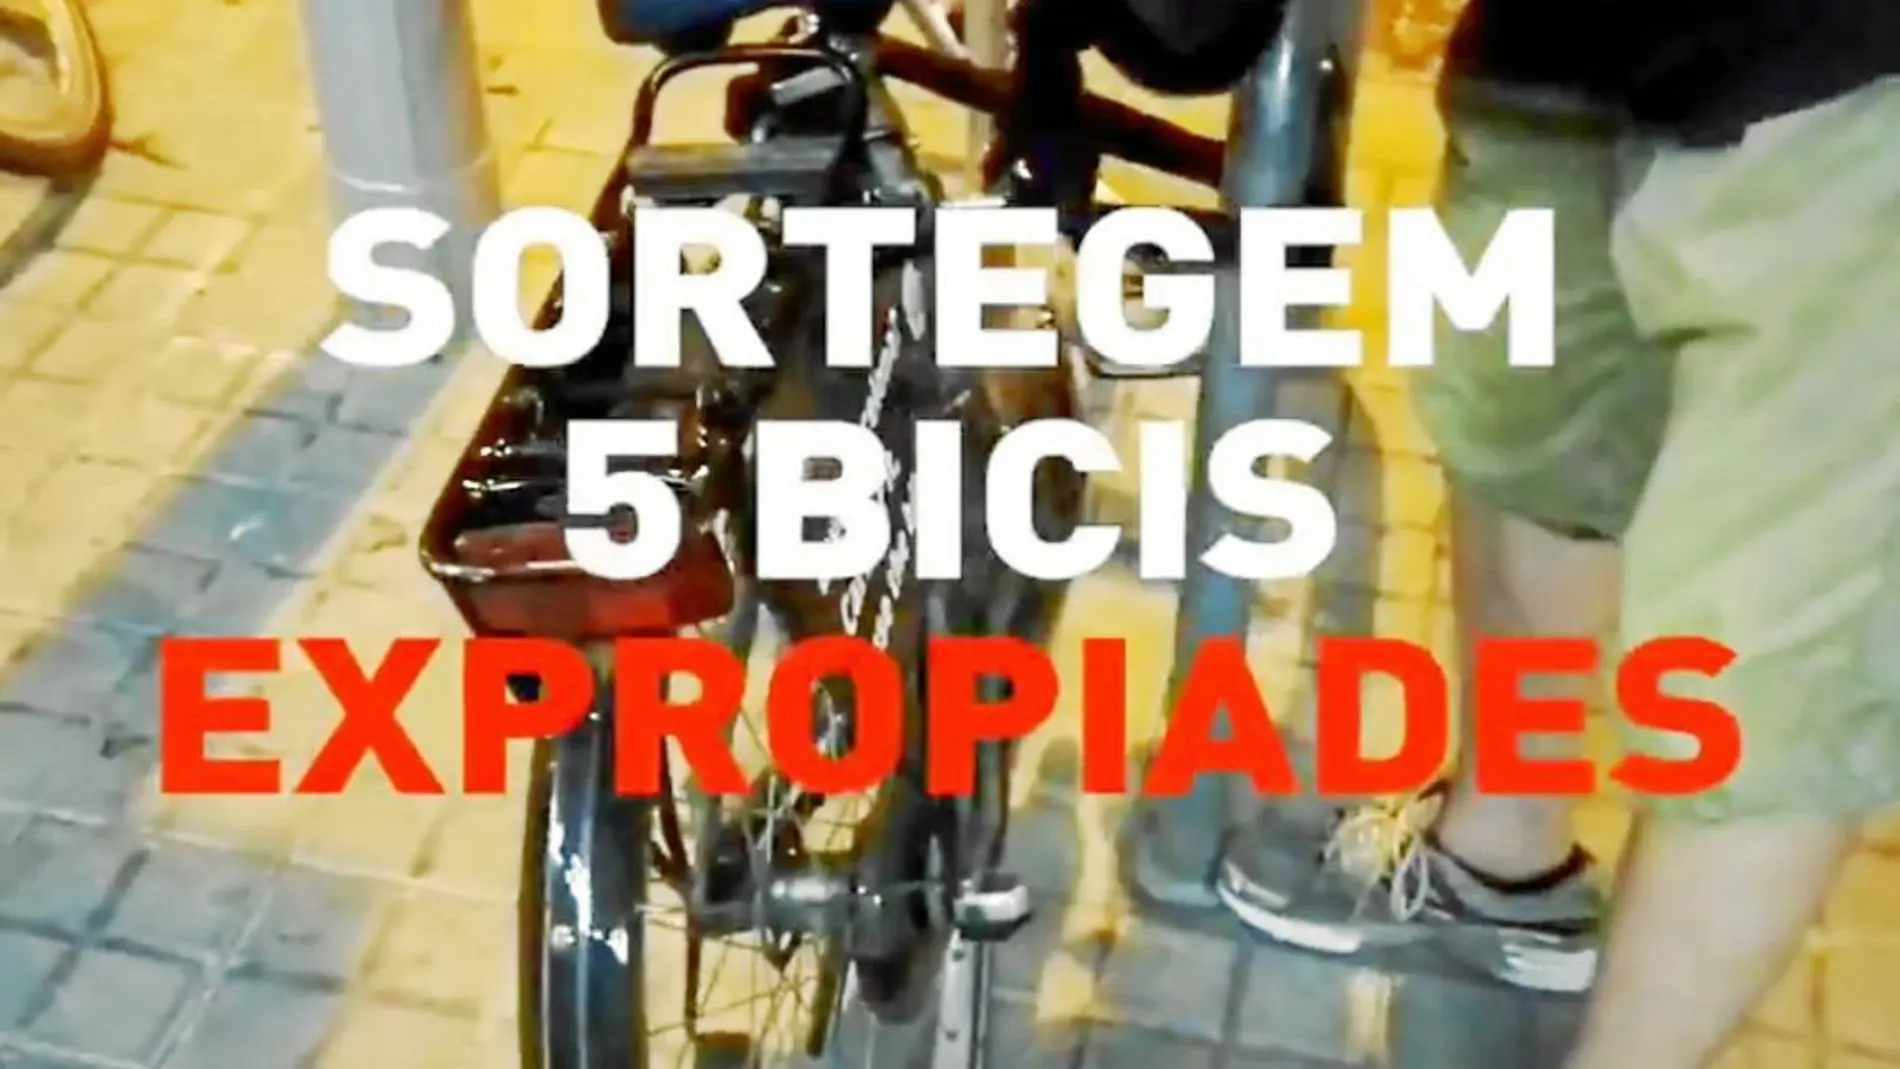 El colectivo juvenil anticapitalista Arran colgó en Twitter un video en el que se observa como sustraen las bicicletas de alquiler turístico